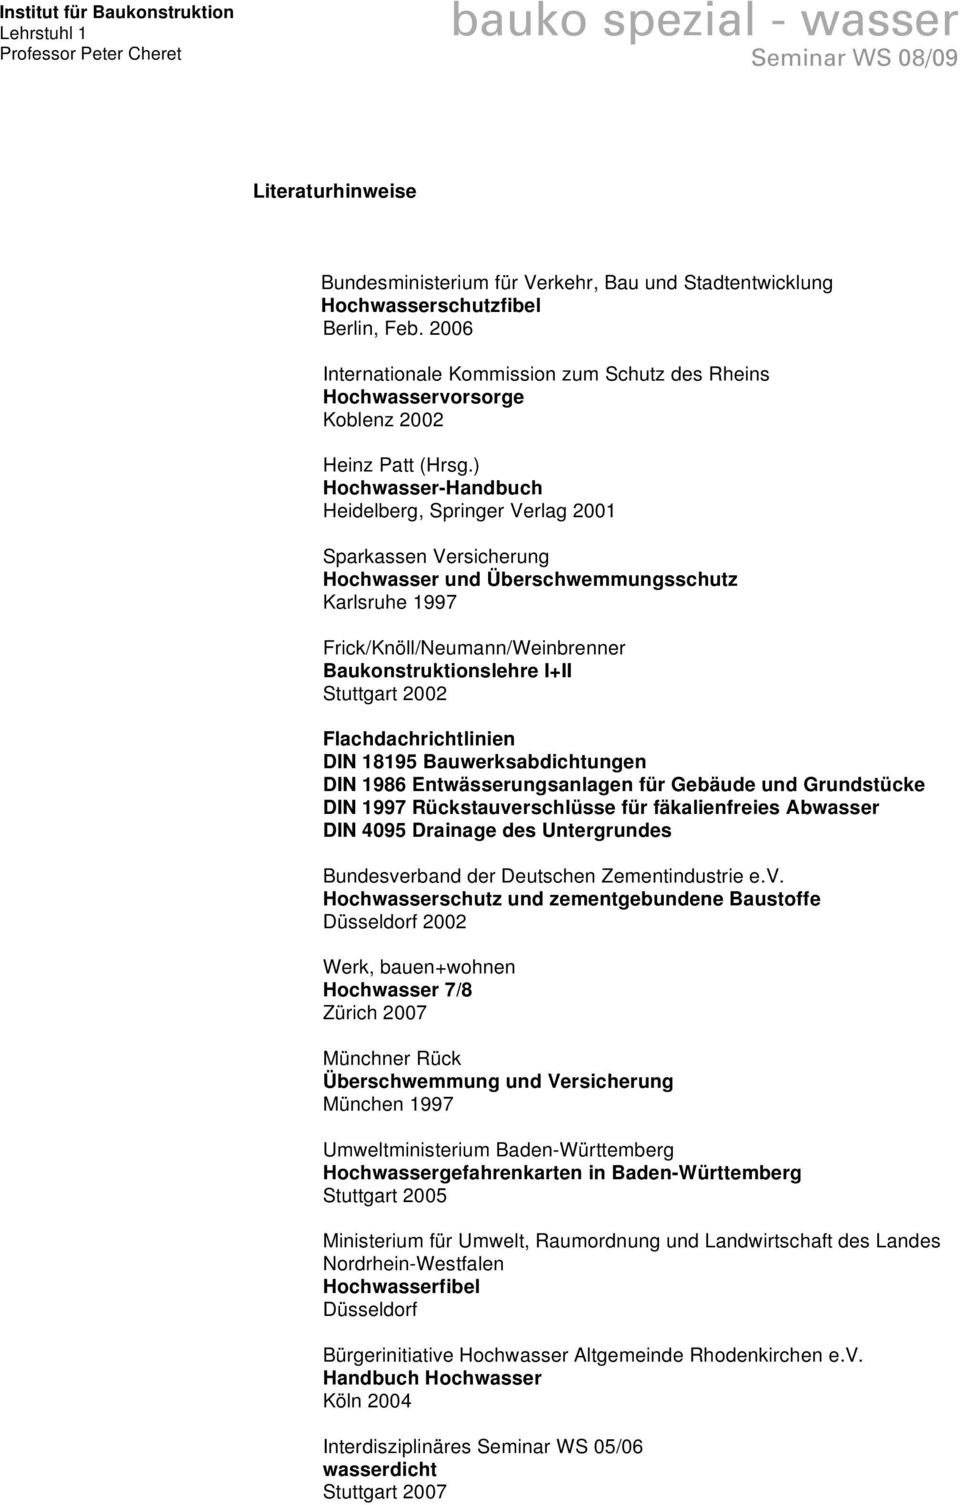 ) Hochwasser-Handbuch Heidelberg, Springer Verlag 2001 Sparkassen Versicherung Hochwasser und Überschwemmungsschutz Karlsruhe 1997 Frick/Knöll/Neumann/Weinbrenner Baukonstruktionslehre I+II Stuttgart